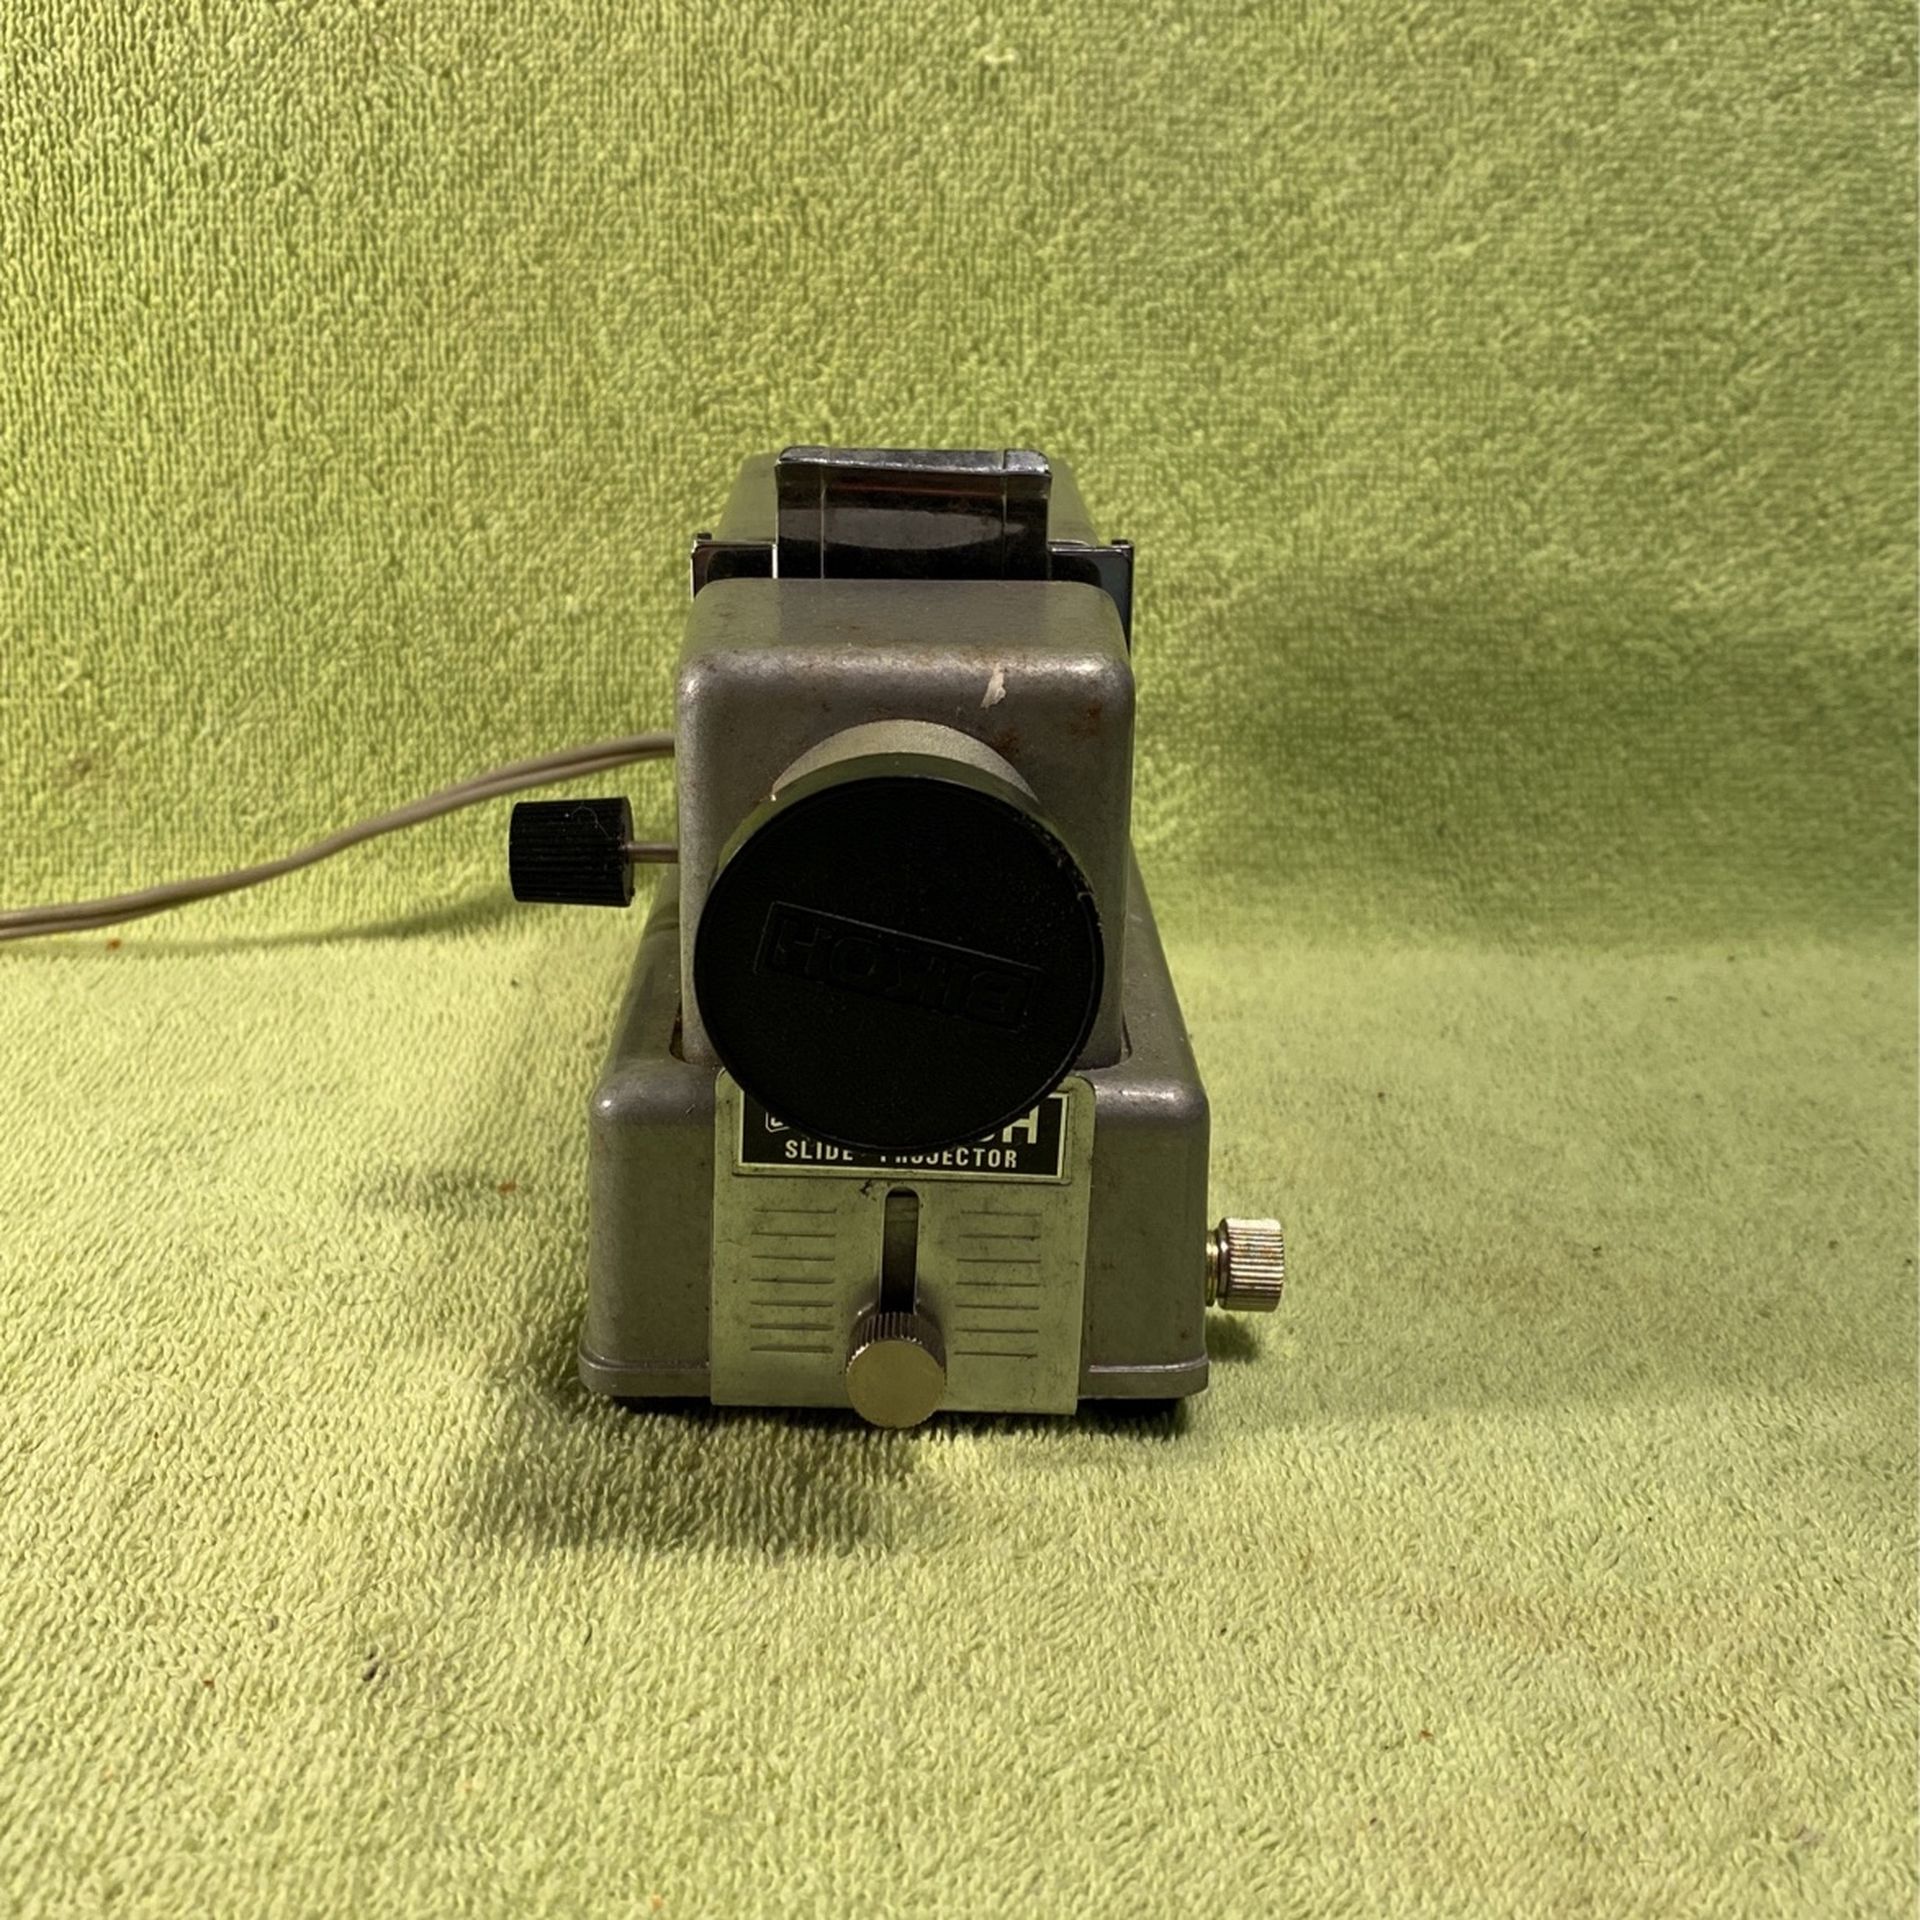 Seiko Bikoh Small slide projector.